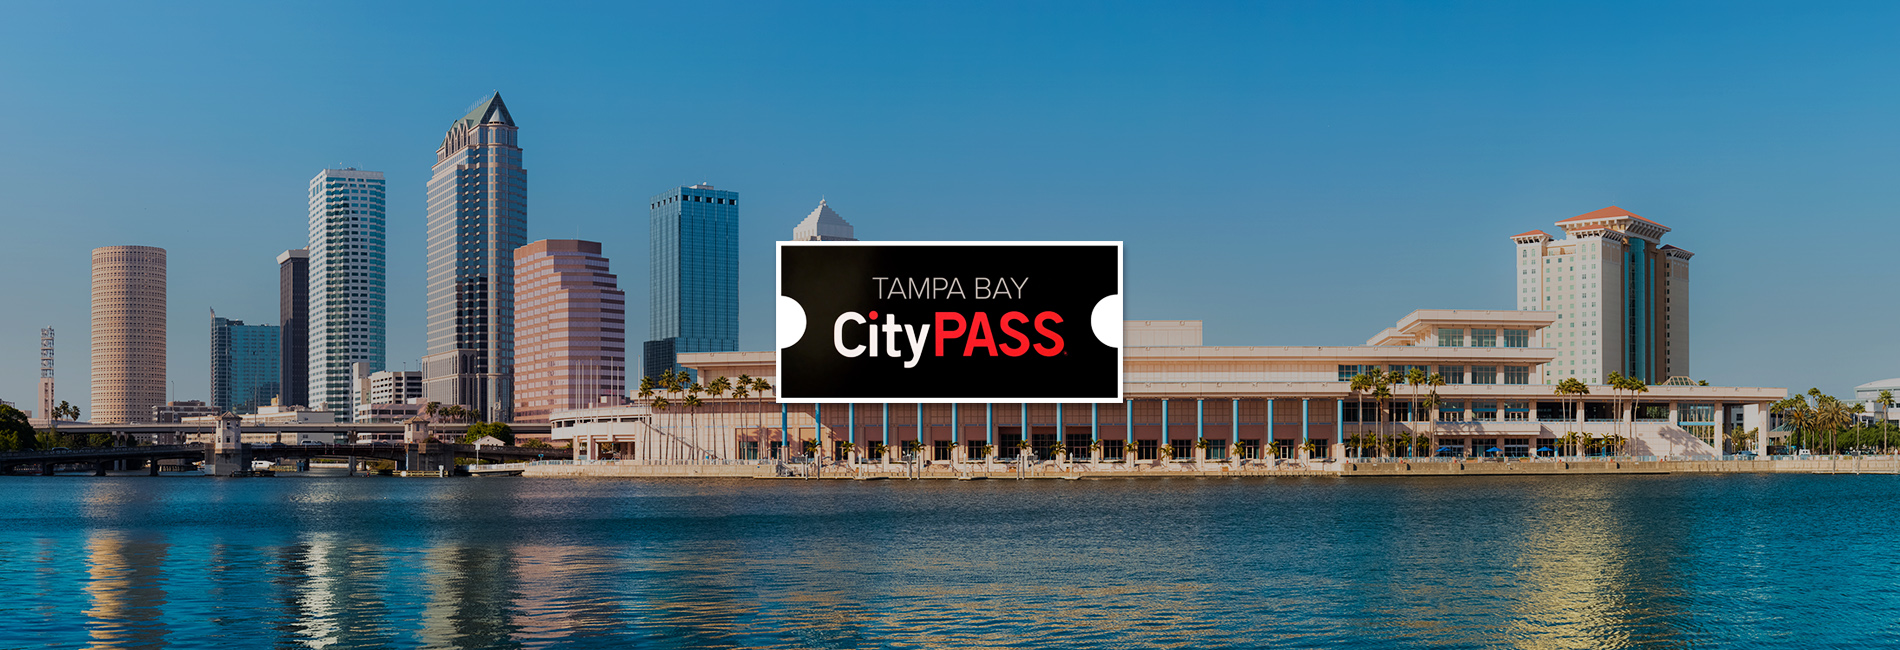 【【任選五大坦帕灣必去景點】坦帕灣城市通行證 Tampa Bay CityPASS